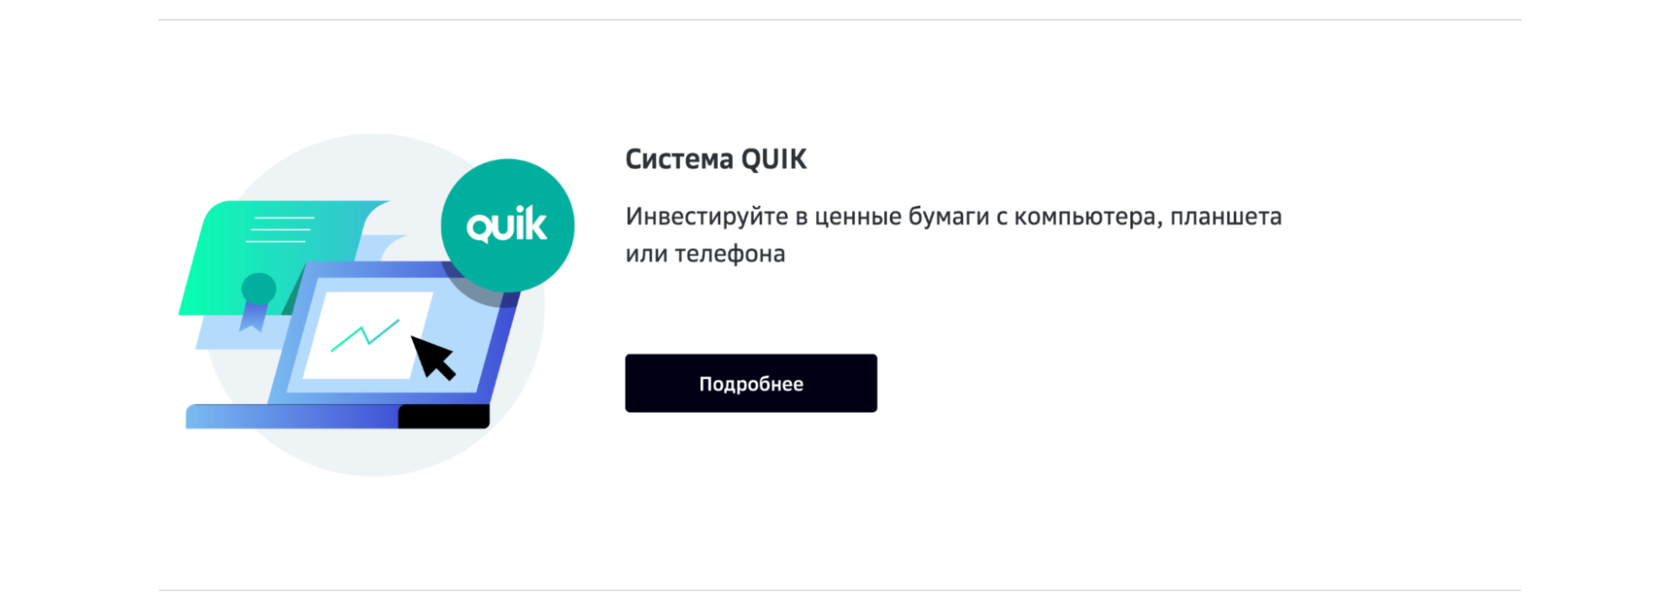 Официальный сайт брокера Сбербанк, установка QUIK